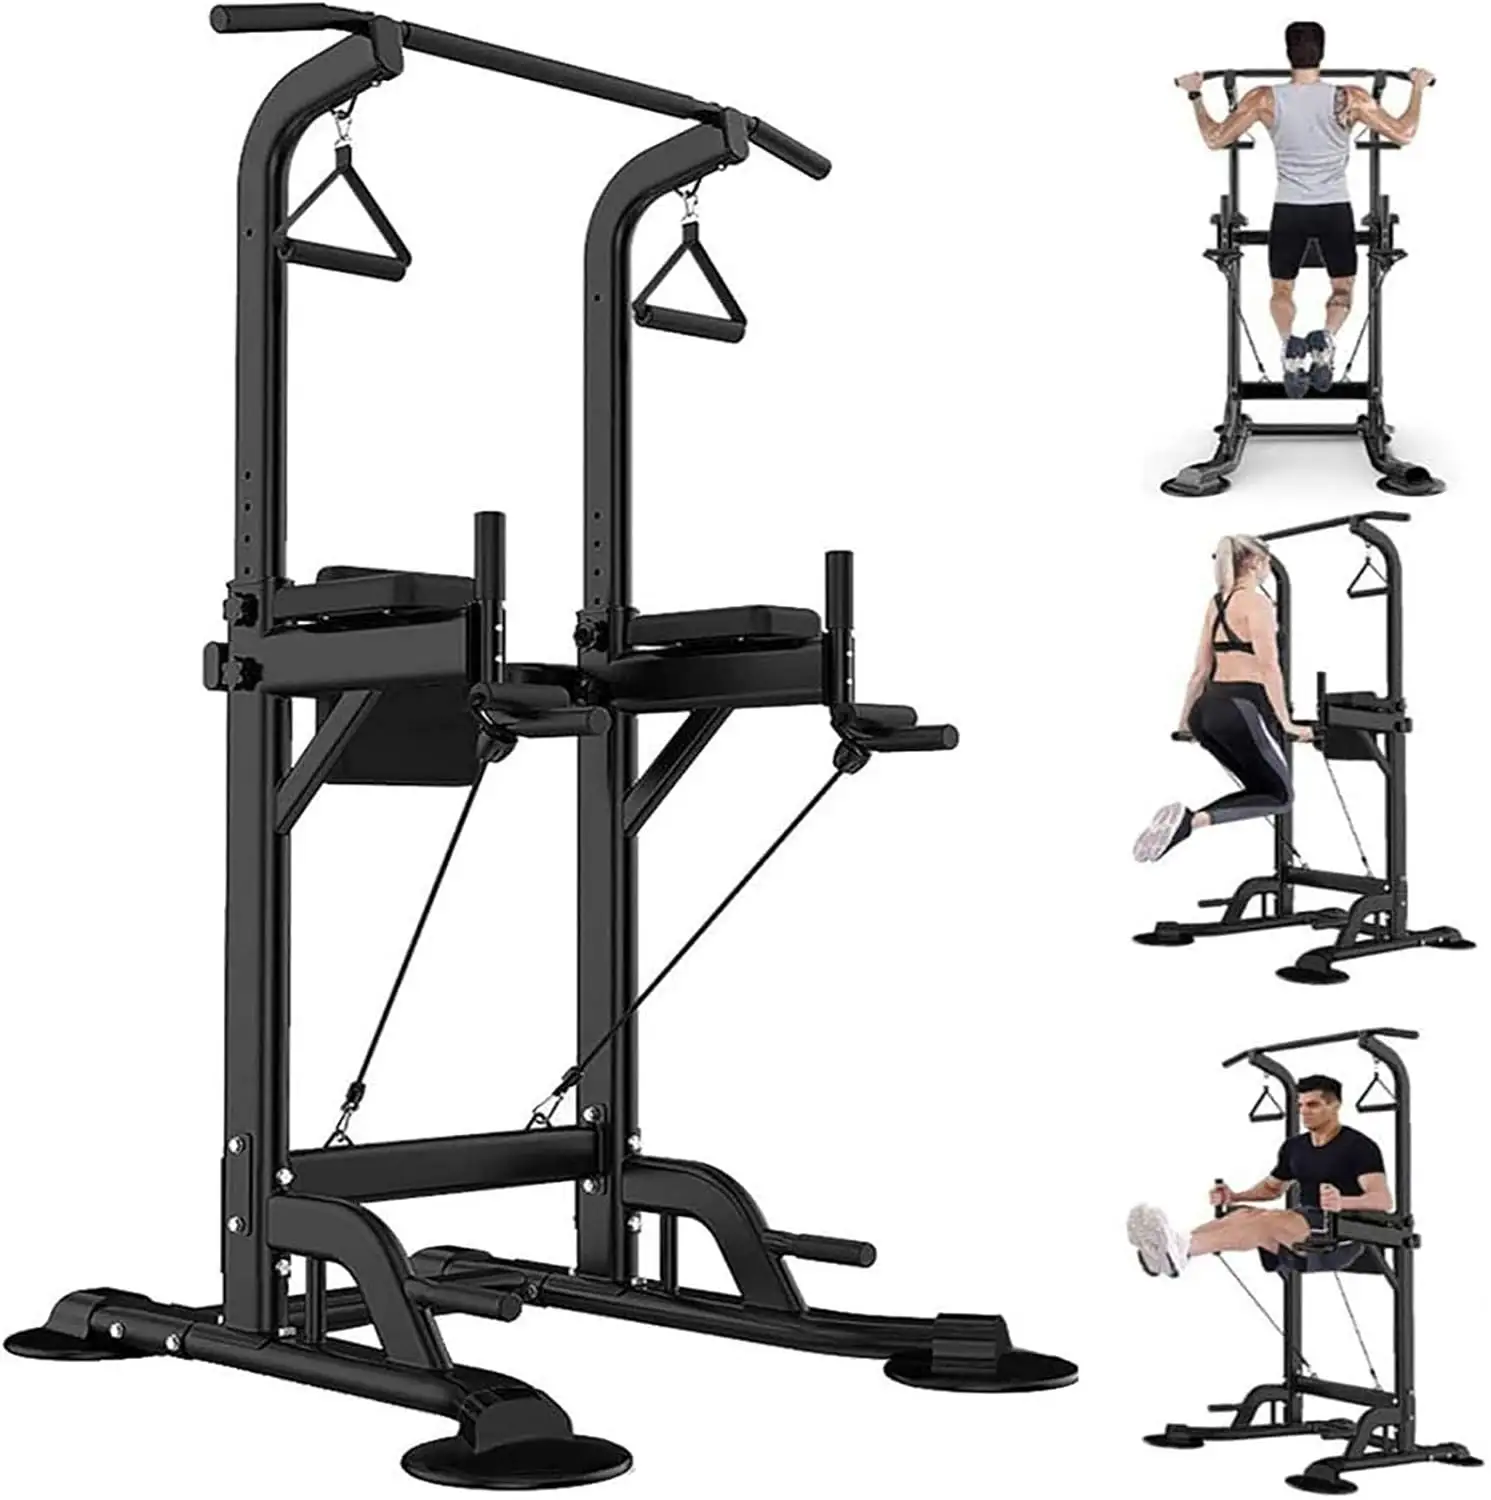 Jw Gym Indoor Horizontale Bar Power Rack mit Gewicht Bank Tauchstation Turm einzelne parallele Bar Fitnessgeräte Pull-Up-Bar